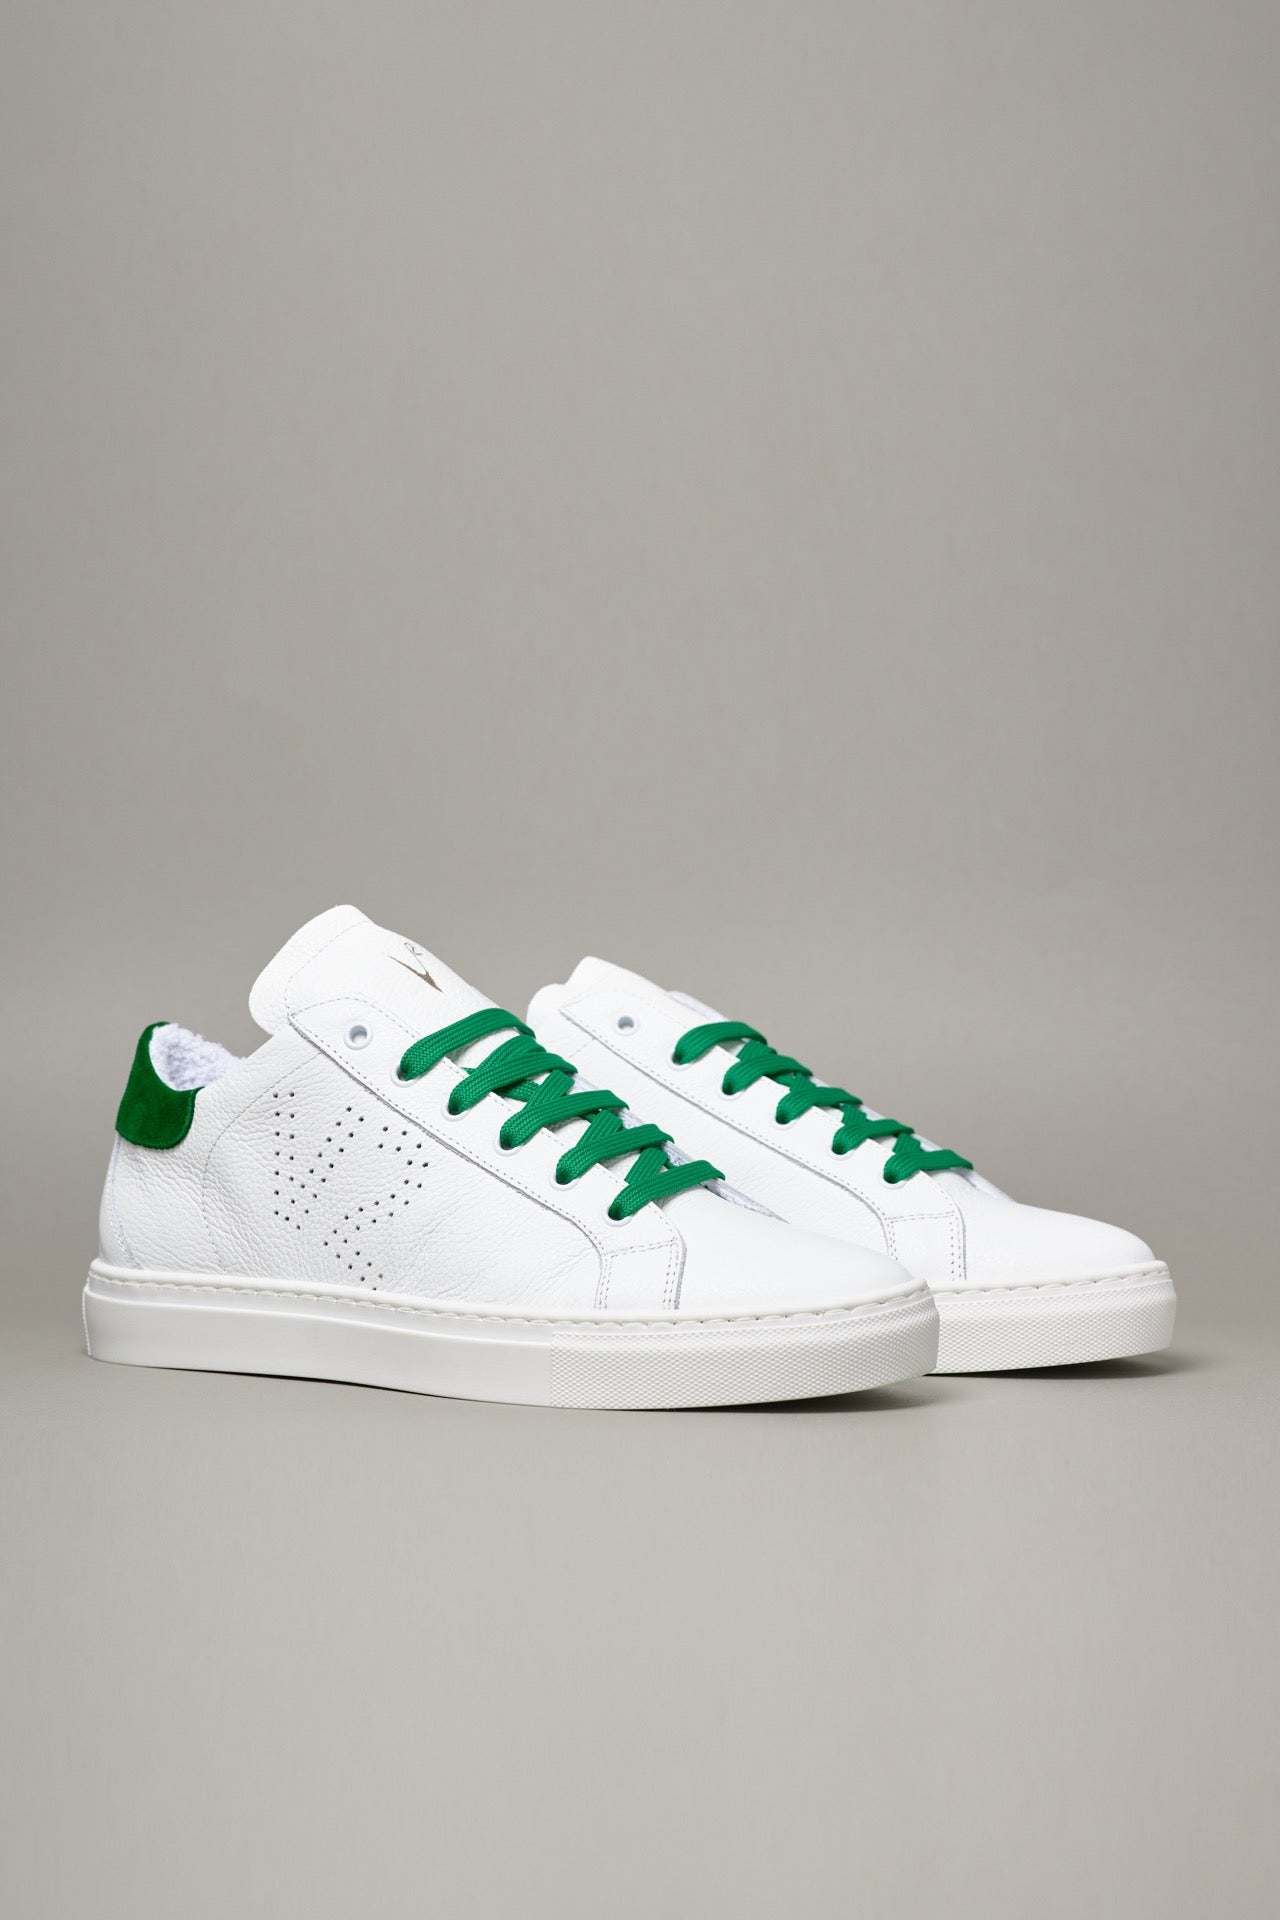 TENNIS - Sneakers a suola bassa Bianca con retro e lacci Verde